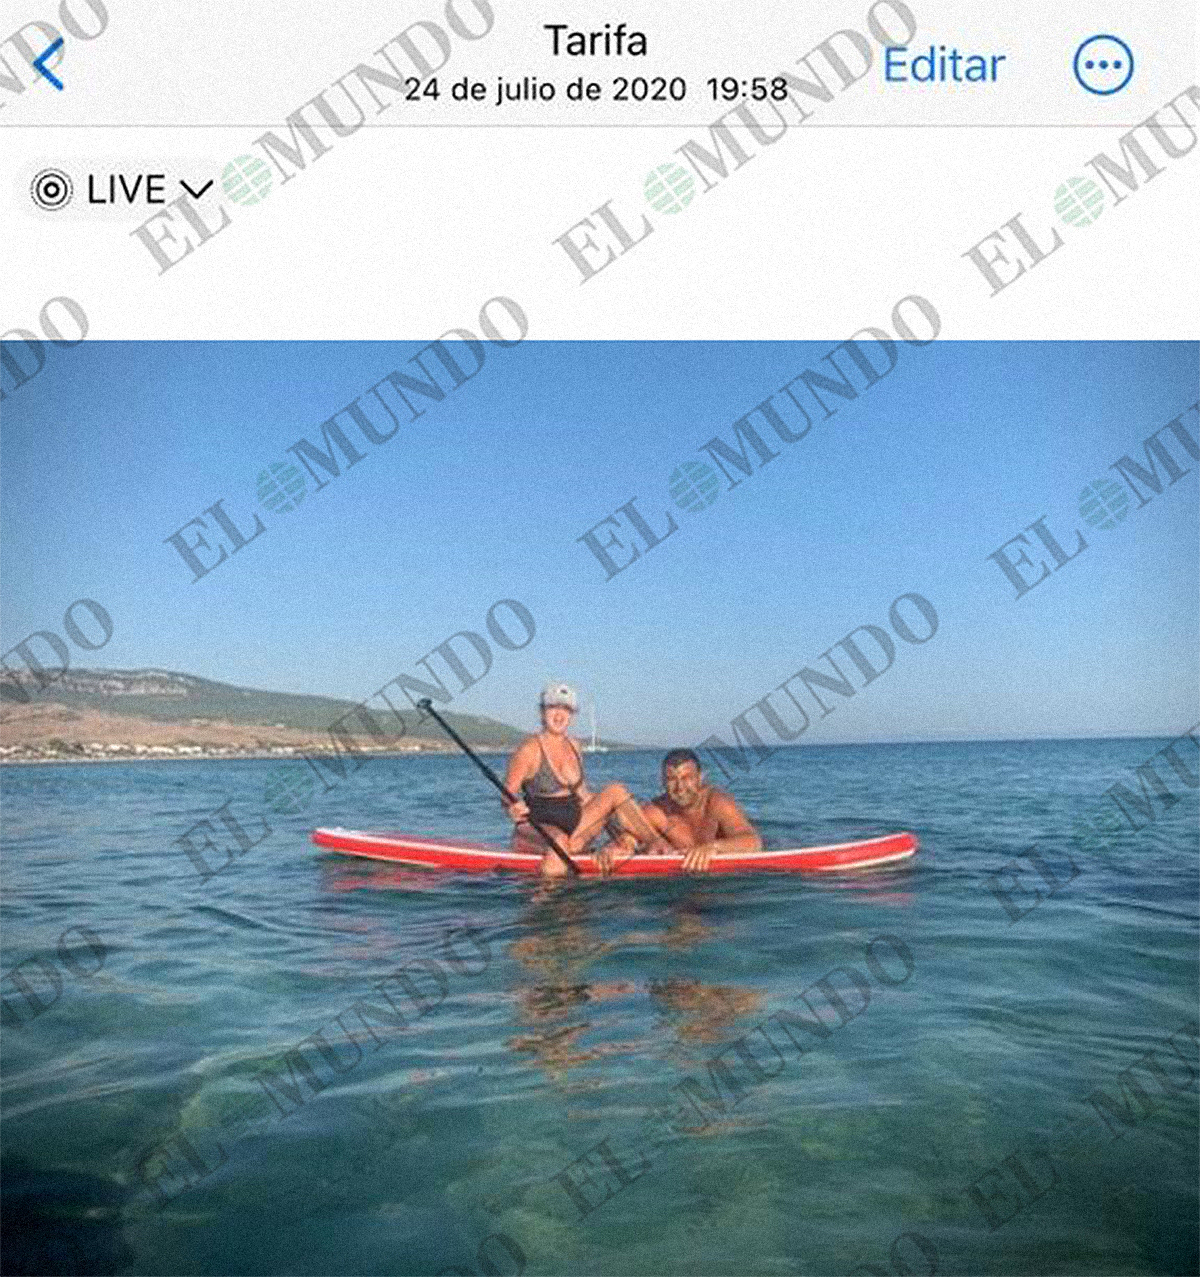 Imagen aportada por Verdejo en la que aparece con su mujer en alta mar el 24 de julio de 2020.